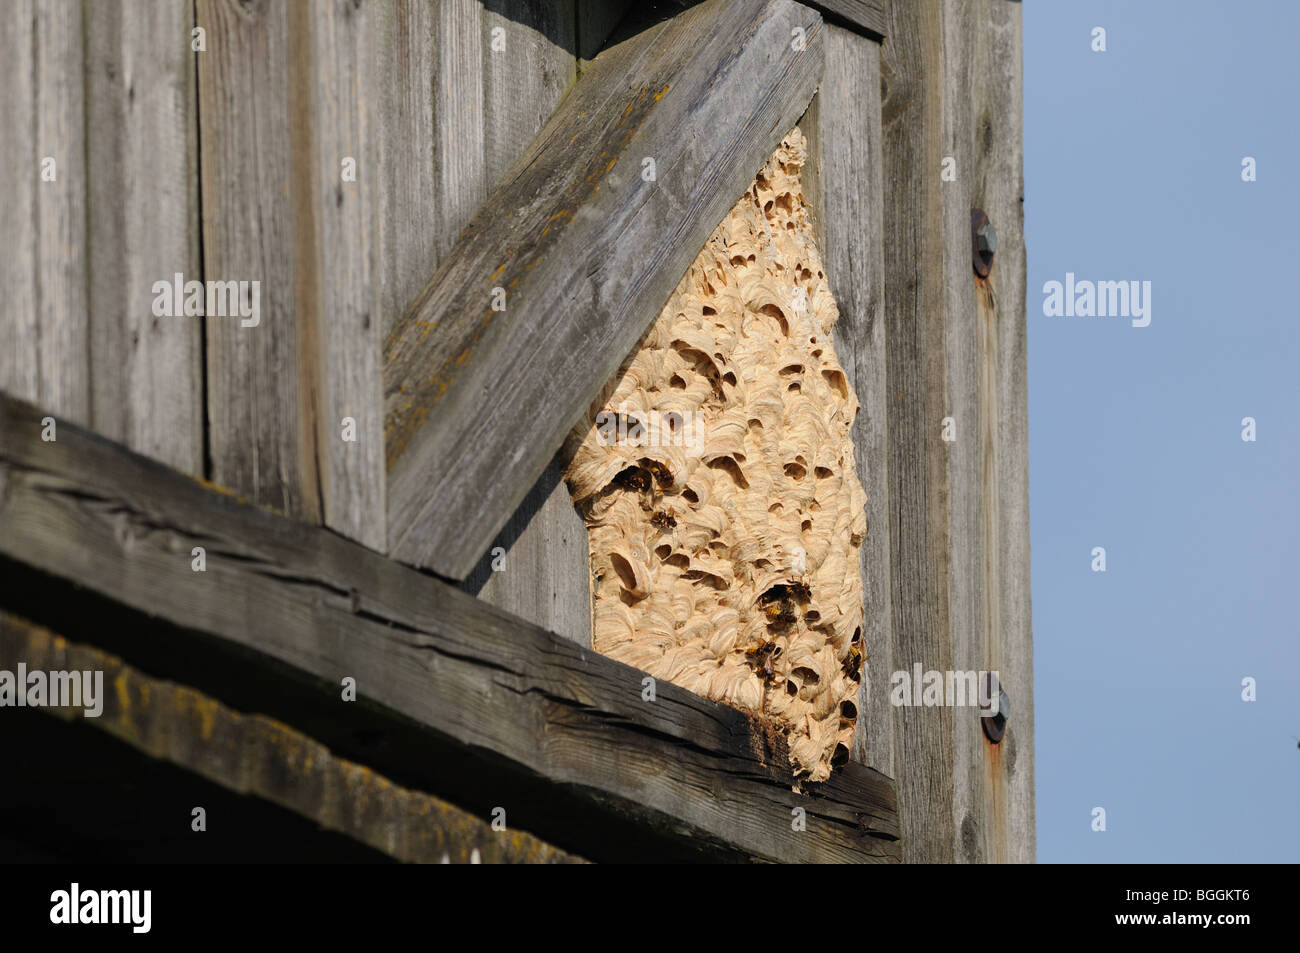 Hornets on nest immagini e fotografie stock ad alta risoluzione - Alamy